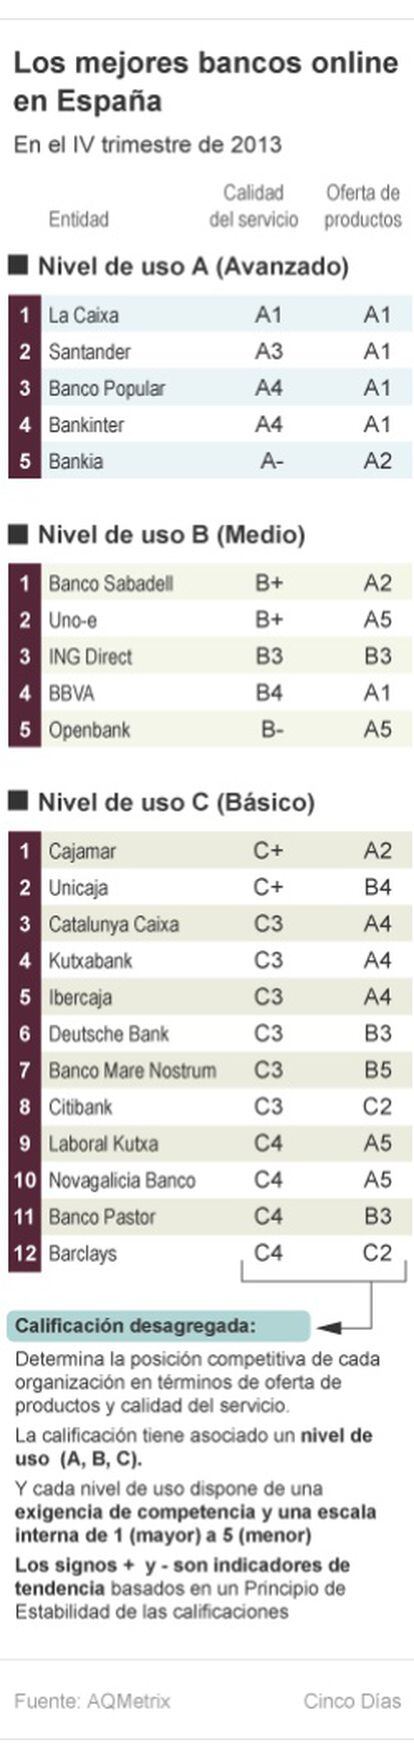 Los mejores bancos online de España